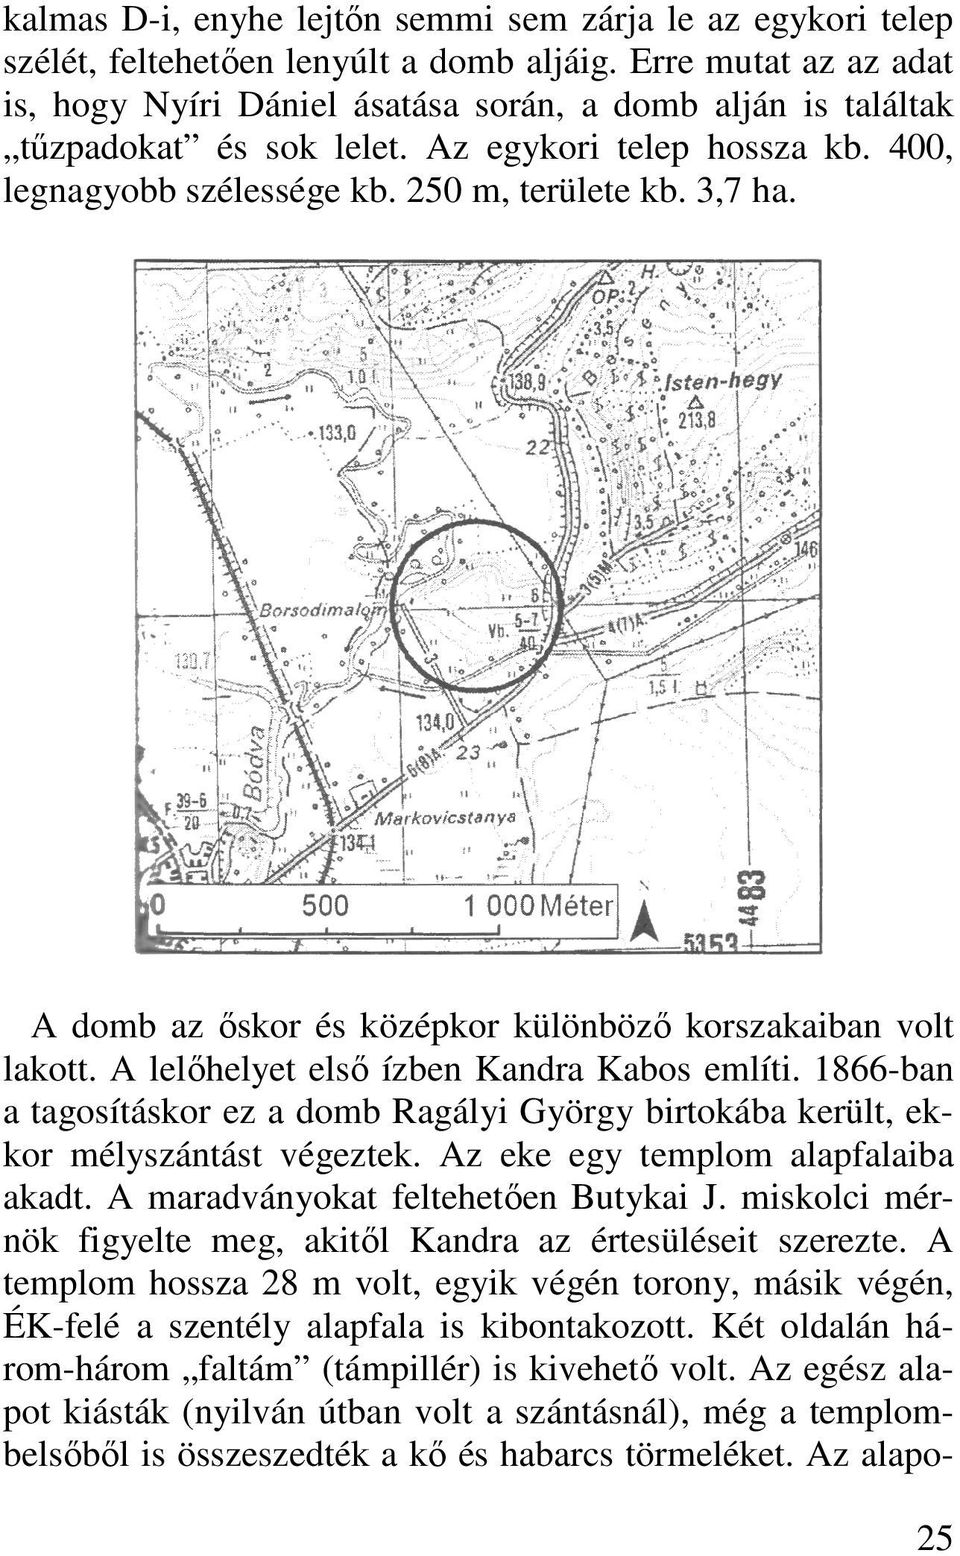 A domb az ıskor és középkor különbözı korszakaiban volt lakott. A lelıhelyet elsı ízben Kandra Kabos említi.